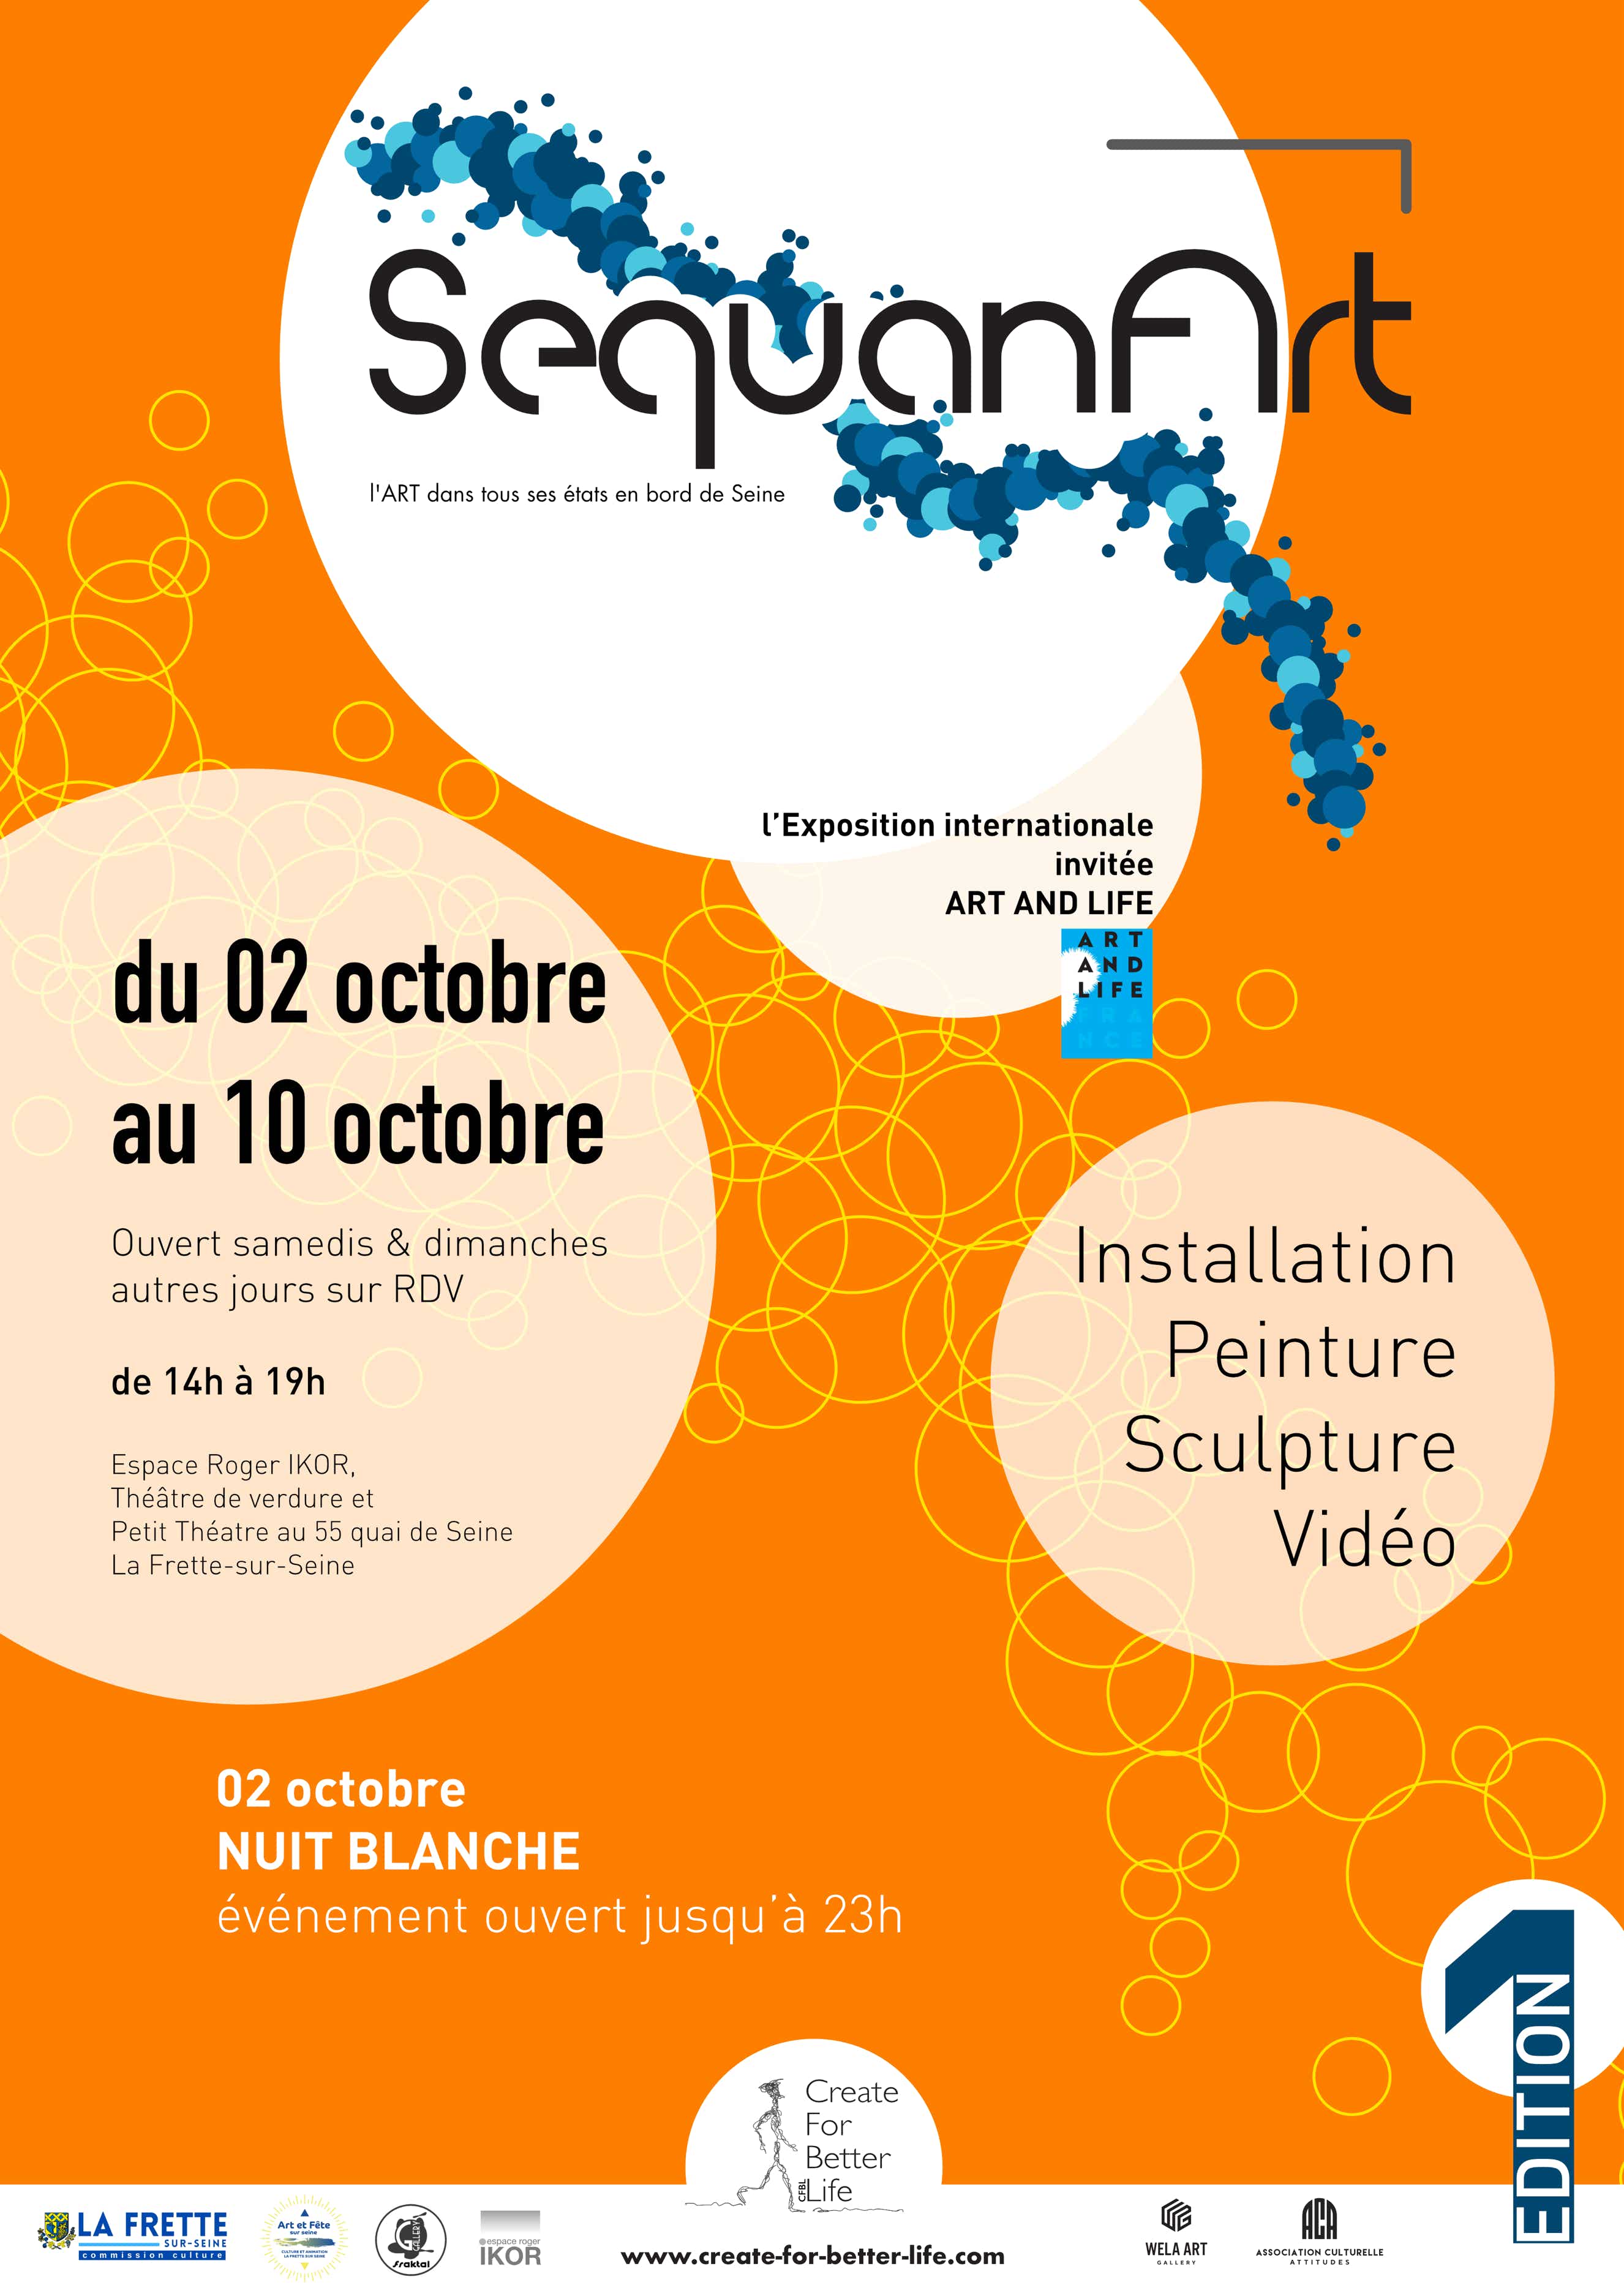 SequanArt, l'évènement des bords de Seine, organisé par Create For Better Life.